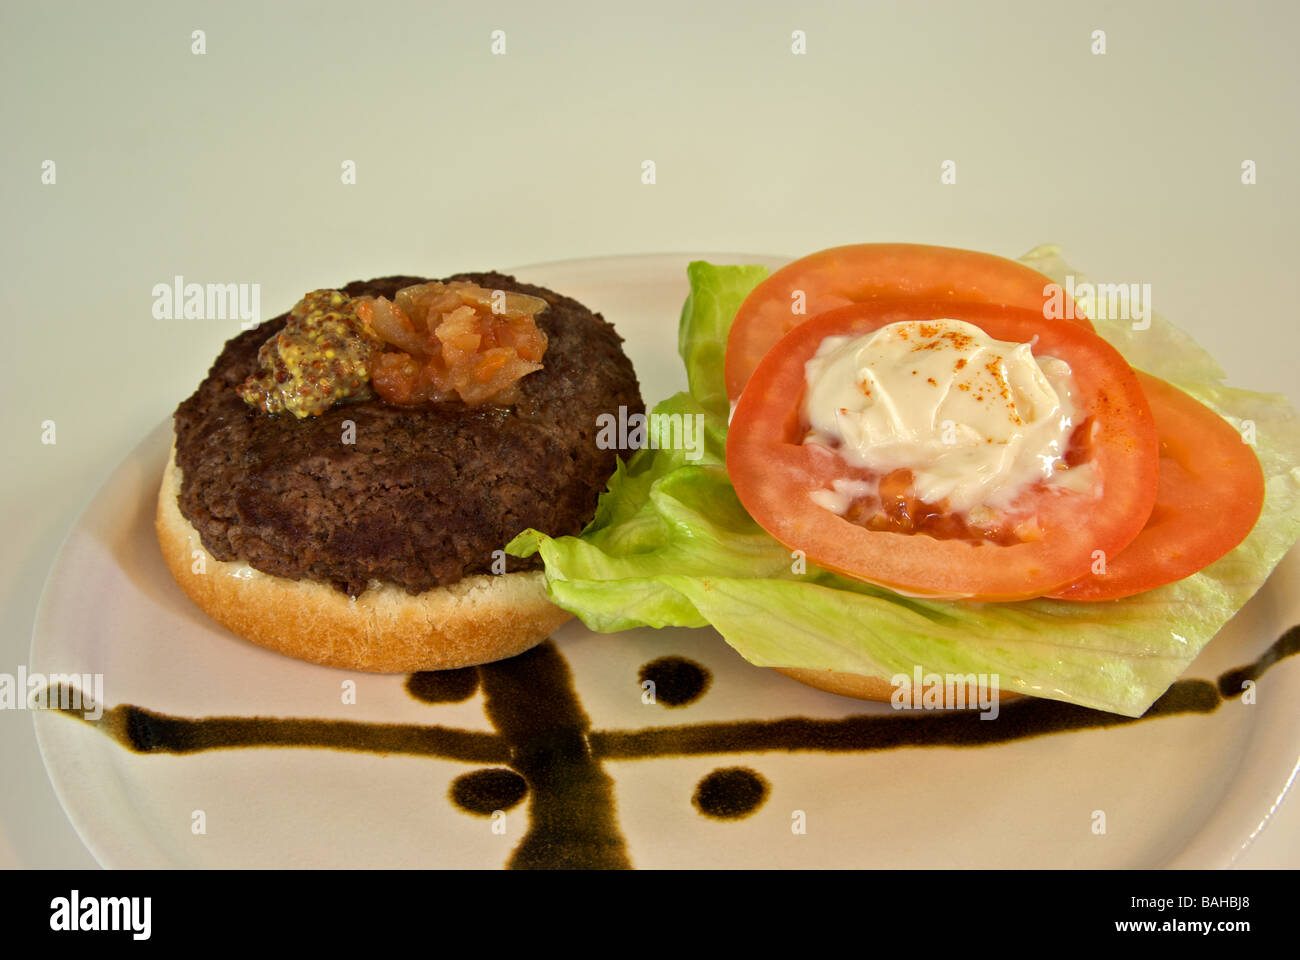 Deluxe hamburger lettuce tomato relish mustard on a bun Stock Photo